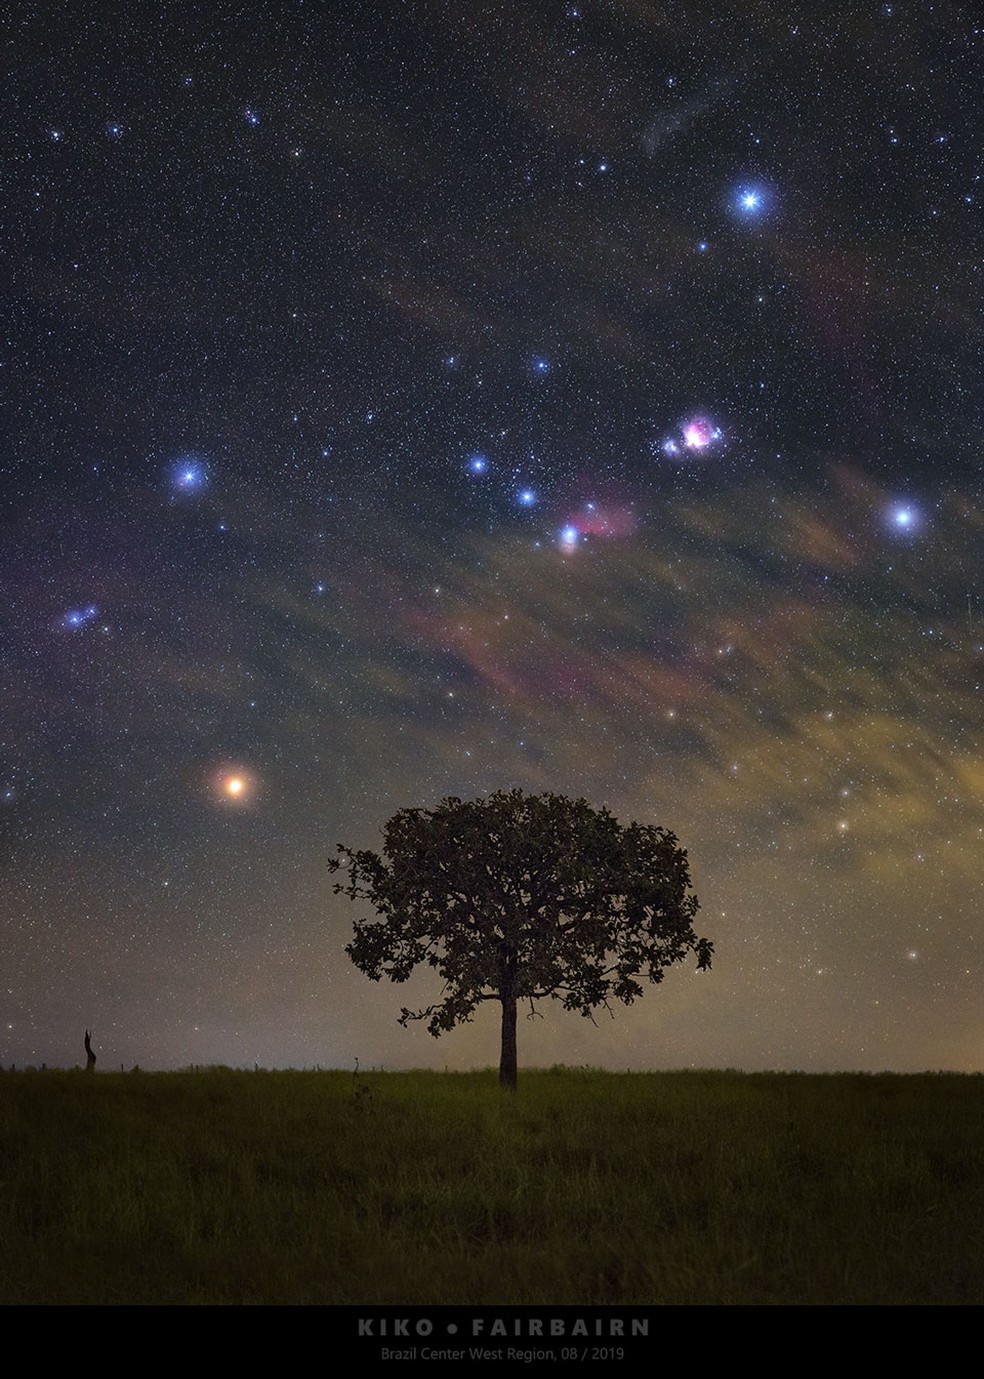 Imagem retrata a constelação do Órion subindo no horizonte, com bastante destaque para as estrelas e as famosas Nebulosas do Órion e da Cabeça do Cavalo e um grande jatobá — Foto: Carlos Fairbairn